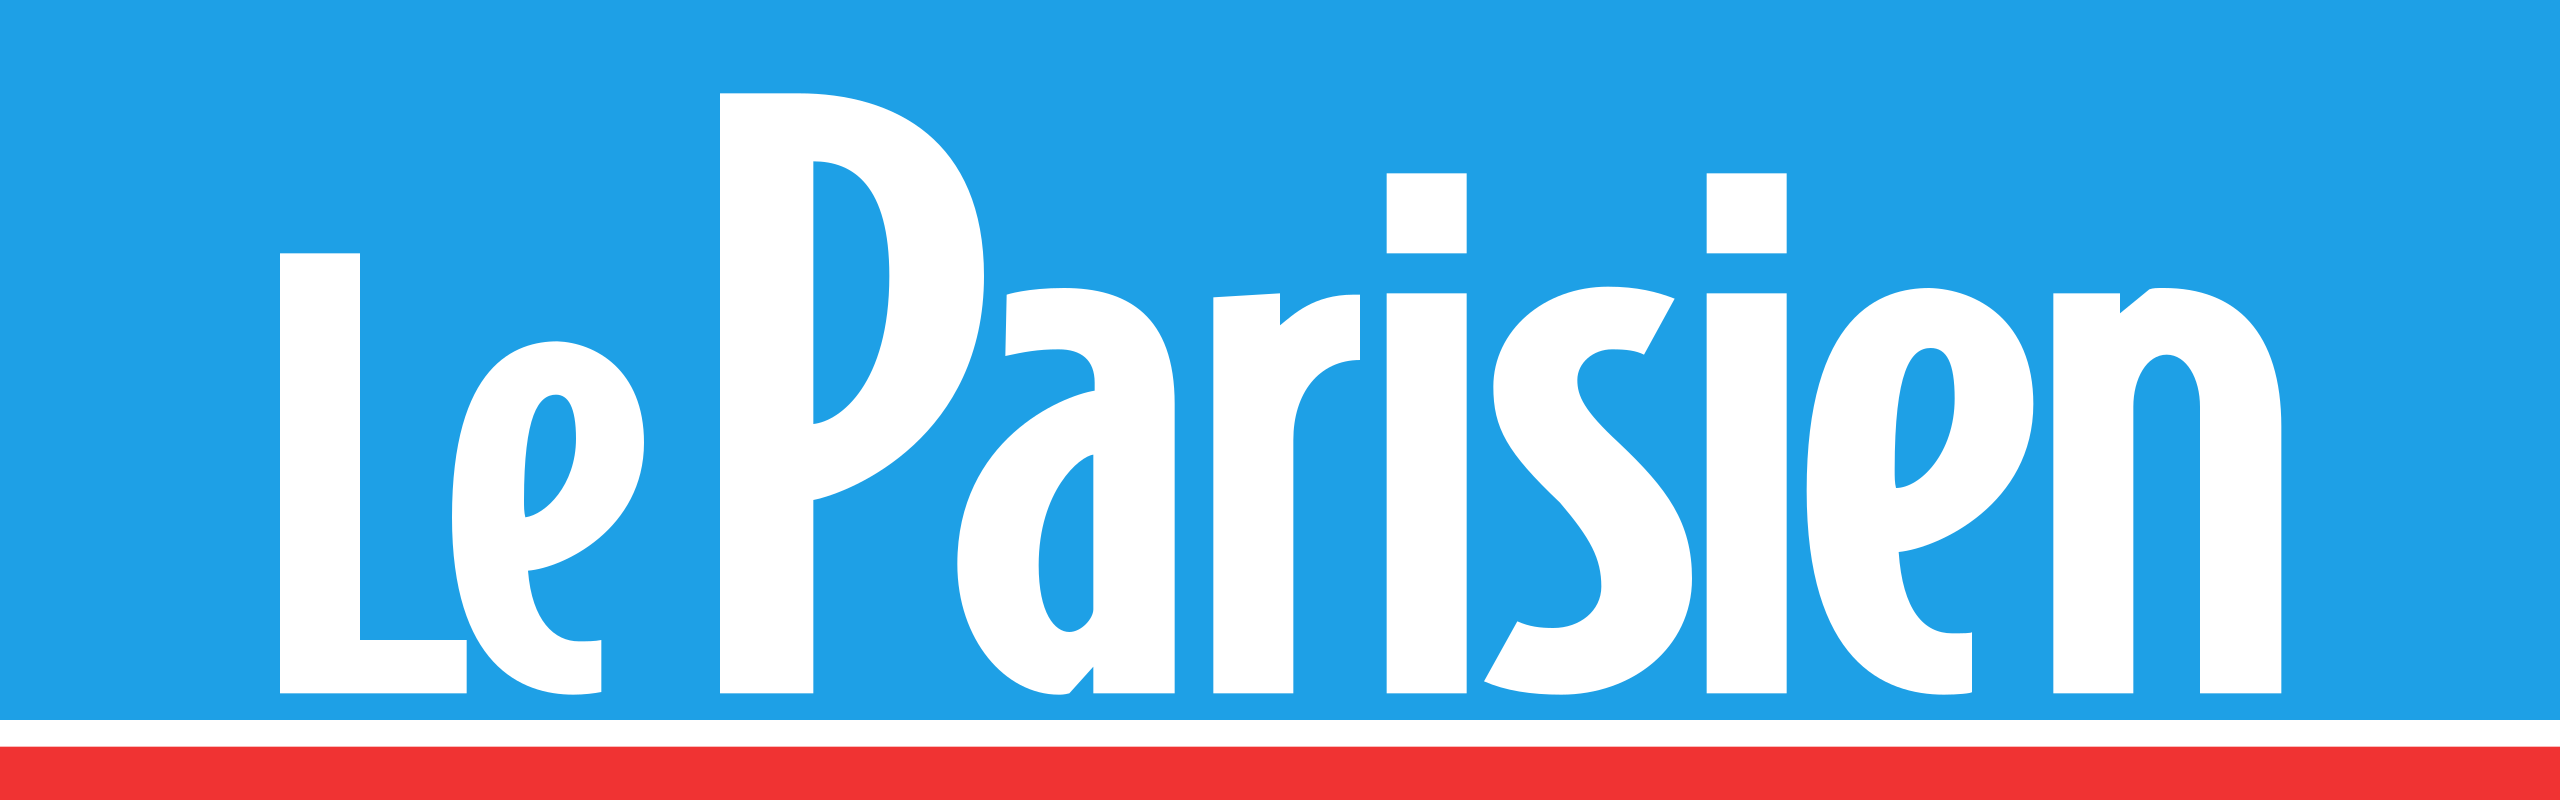 Le Parisien - boutique abonnement